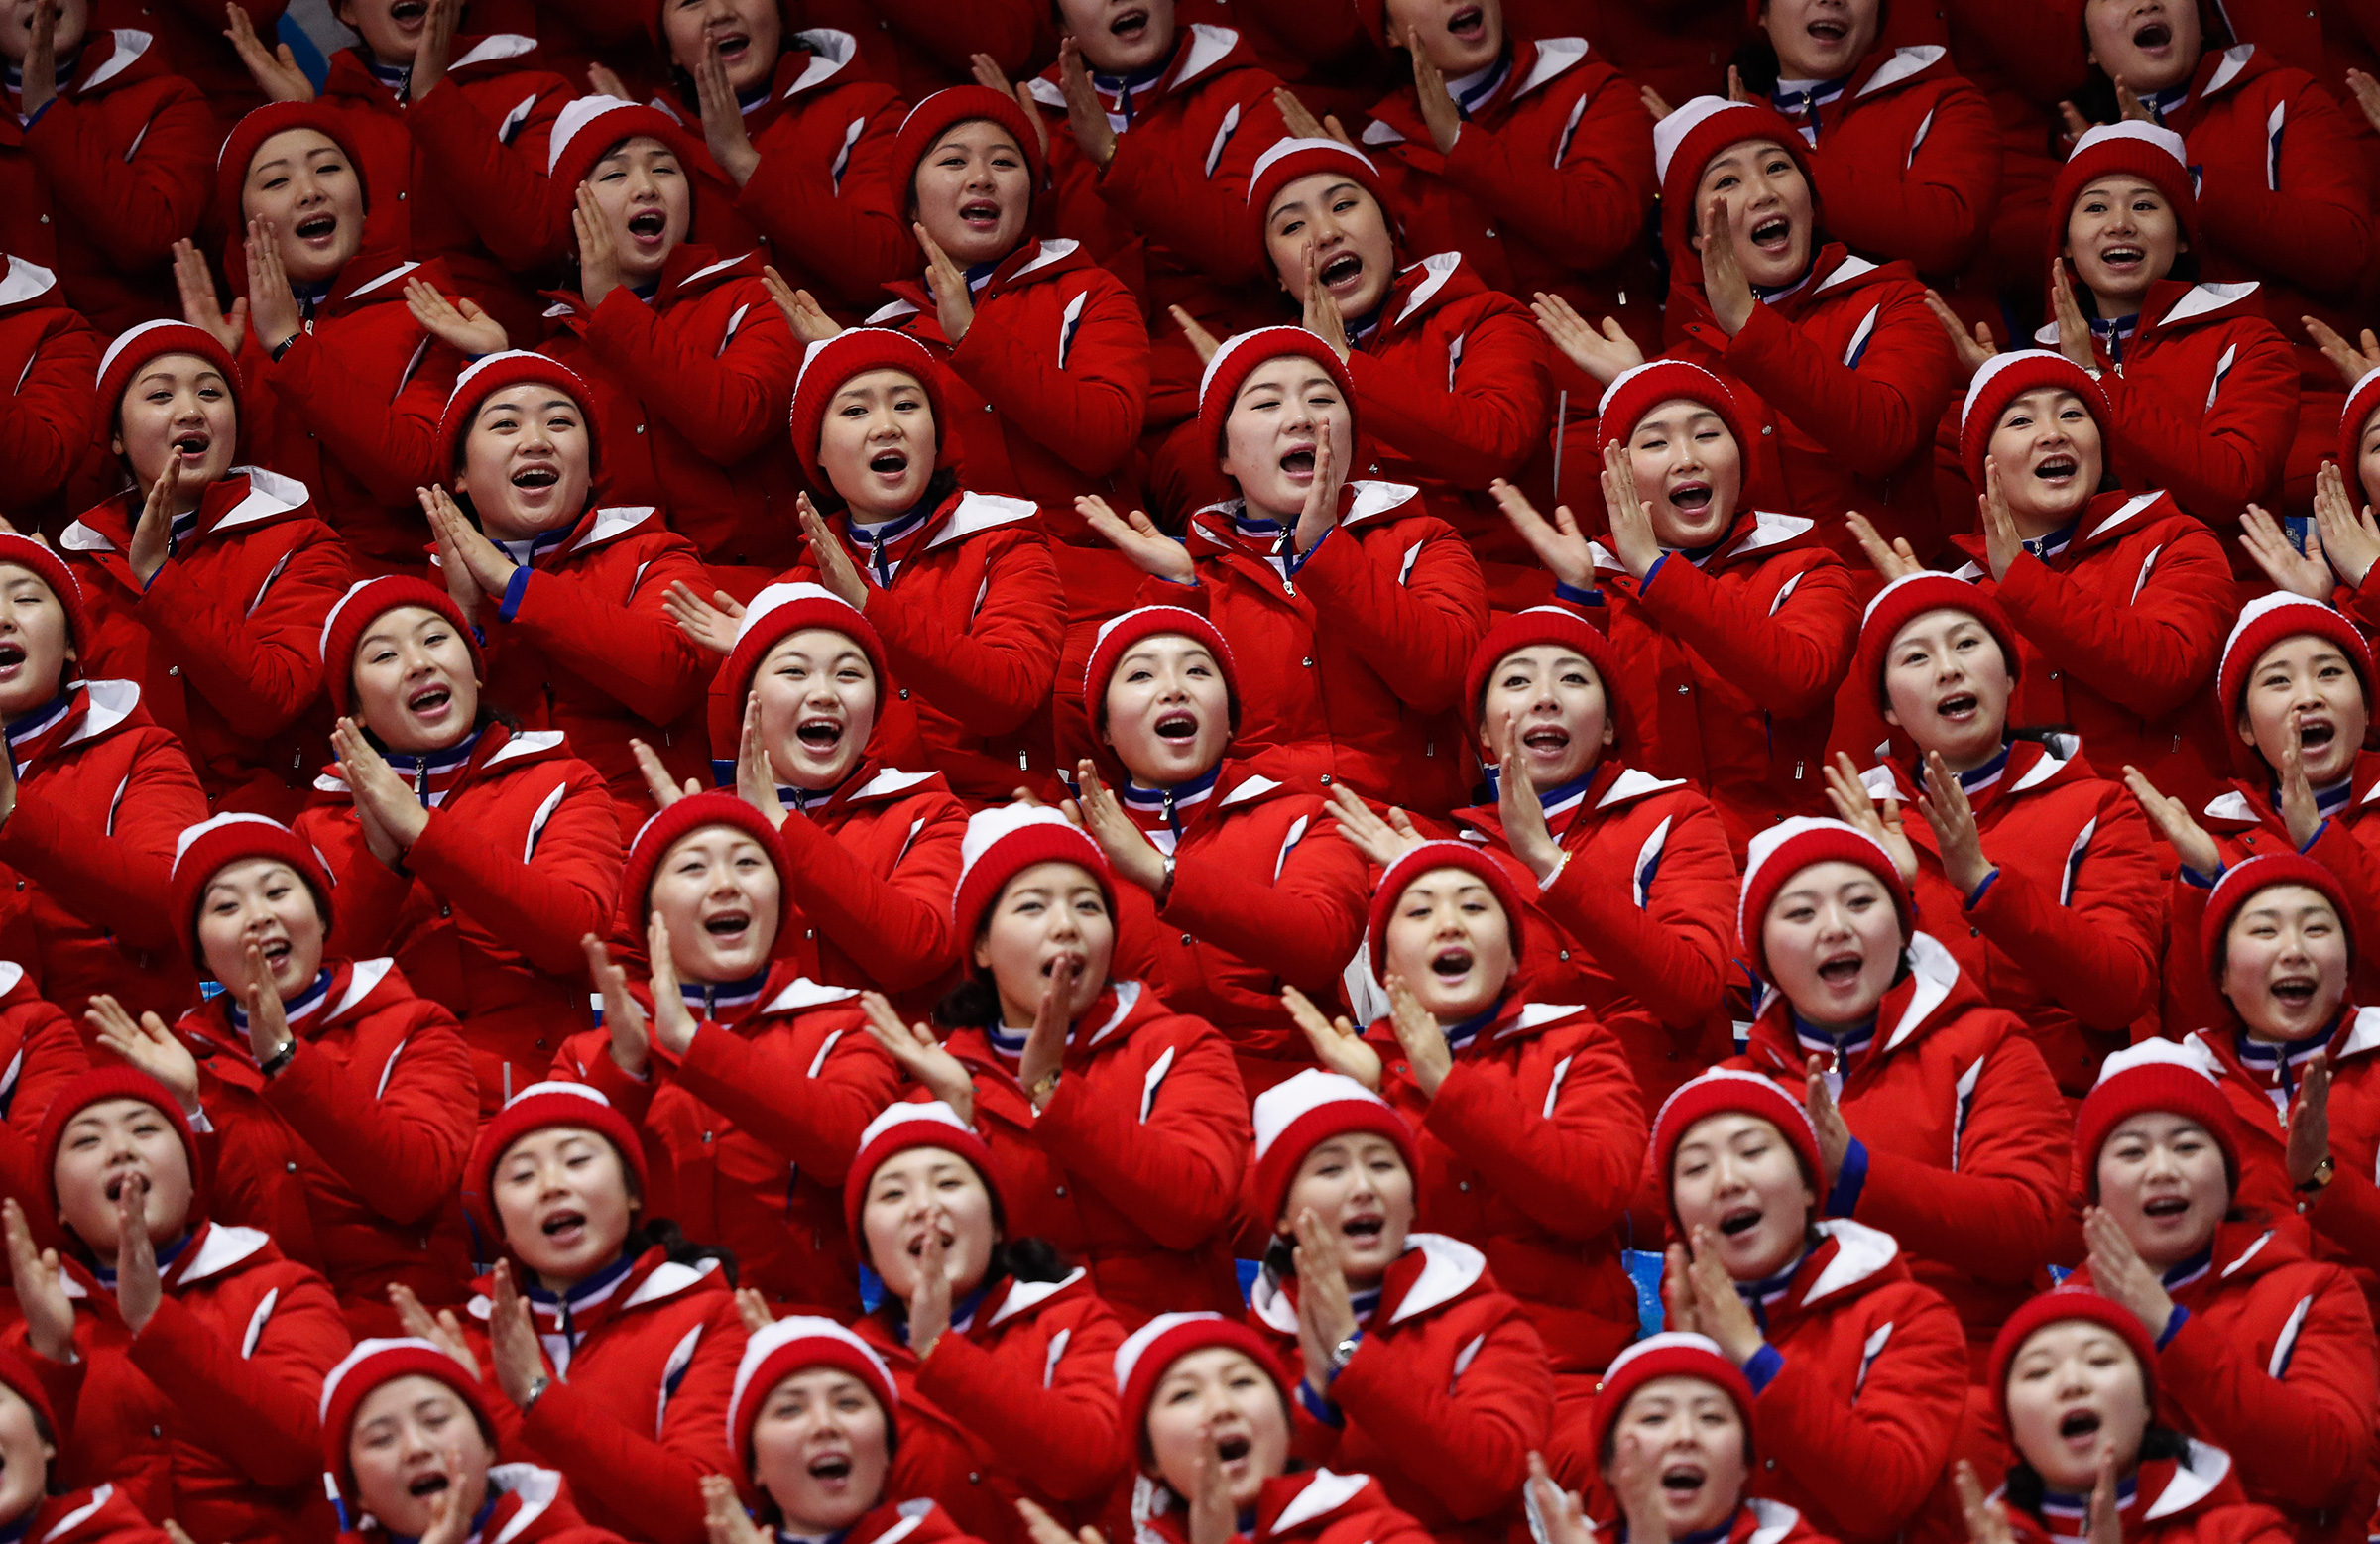 Едва&nbsp;ли не больше самой Олимпиады запомнятся болельщицы Северной Кореи. Впервые с 2006 года КНДР и Южная Корея объединились для участия в Играх. КНДР привезла в Южную Корею группу поддержки из 229 девушек. Все они одеты в форму, на трибунах синхронно кричат лозунги и демонстрируют танцевальные движения. Как пишет The New York Times, болельщицы разделены на группы, каждую из которых сопровождают несколько мужчин. Без сопровождения болельщицы не появляются нигде и не общаются ни с кем, кроме друг друга. У них есть заводила, по команде которого они начинают кричать и хлопать.

Как рассказала изданию женщина, которой несколько лет назад удалось бежать из КНДР, она тоже когда-то была такой чирлидершей. По ее словам, девушек отбирают из спортивных и танцевальных секций, они обязательно должны быть выше 160&nbsp;см, а также быть благонадежными и доказать верность режиму. За выступления на соревнованиях им не платят, а на подготовку к ним уходит несколько месяцев.
